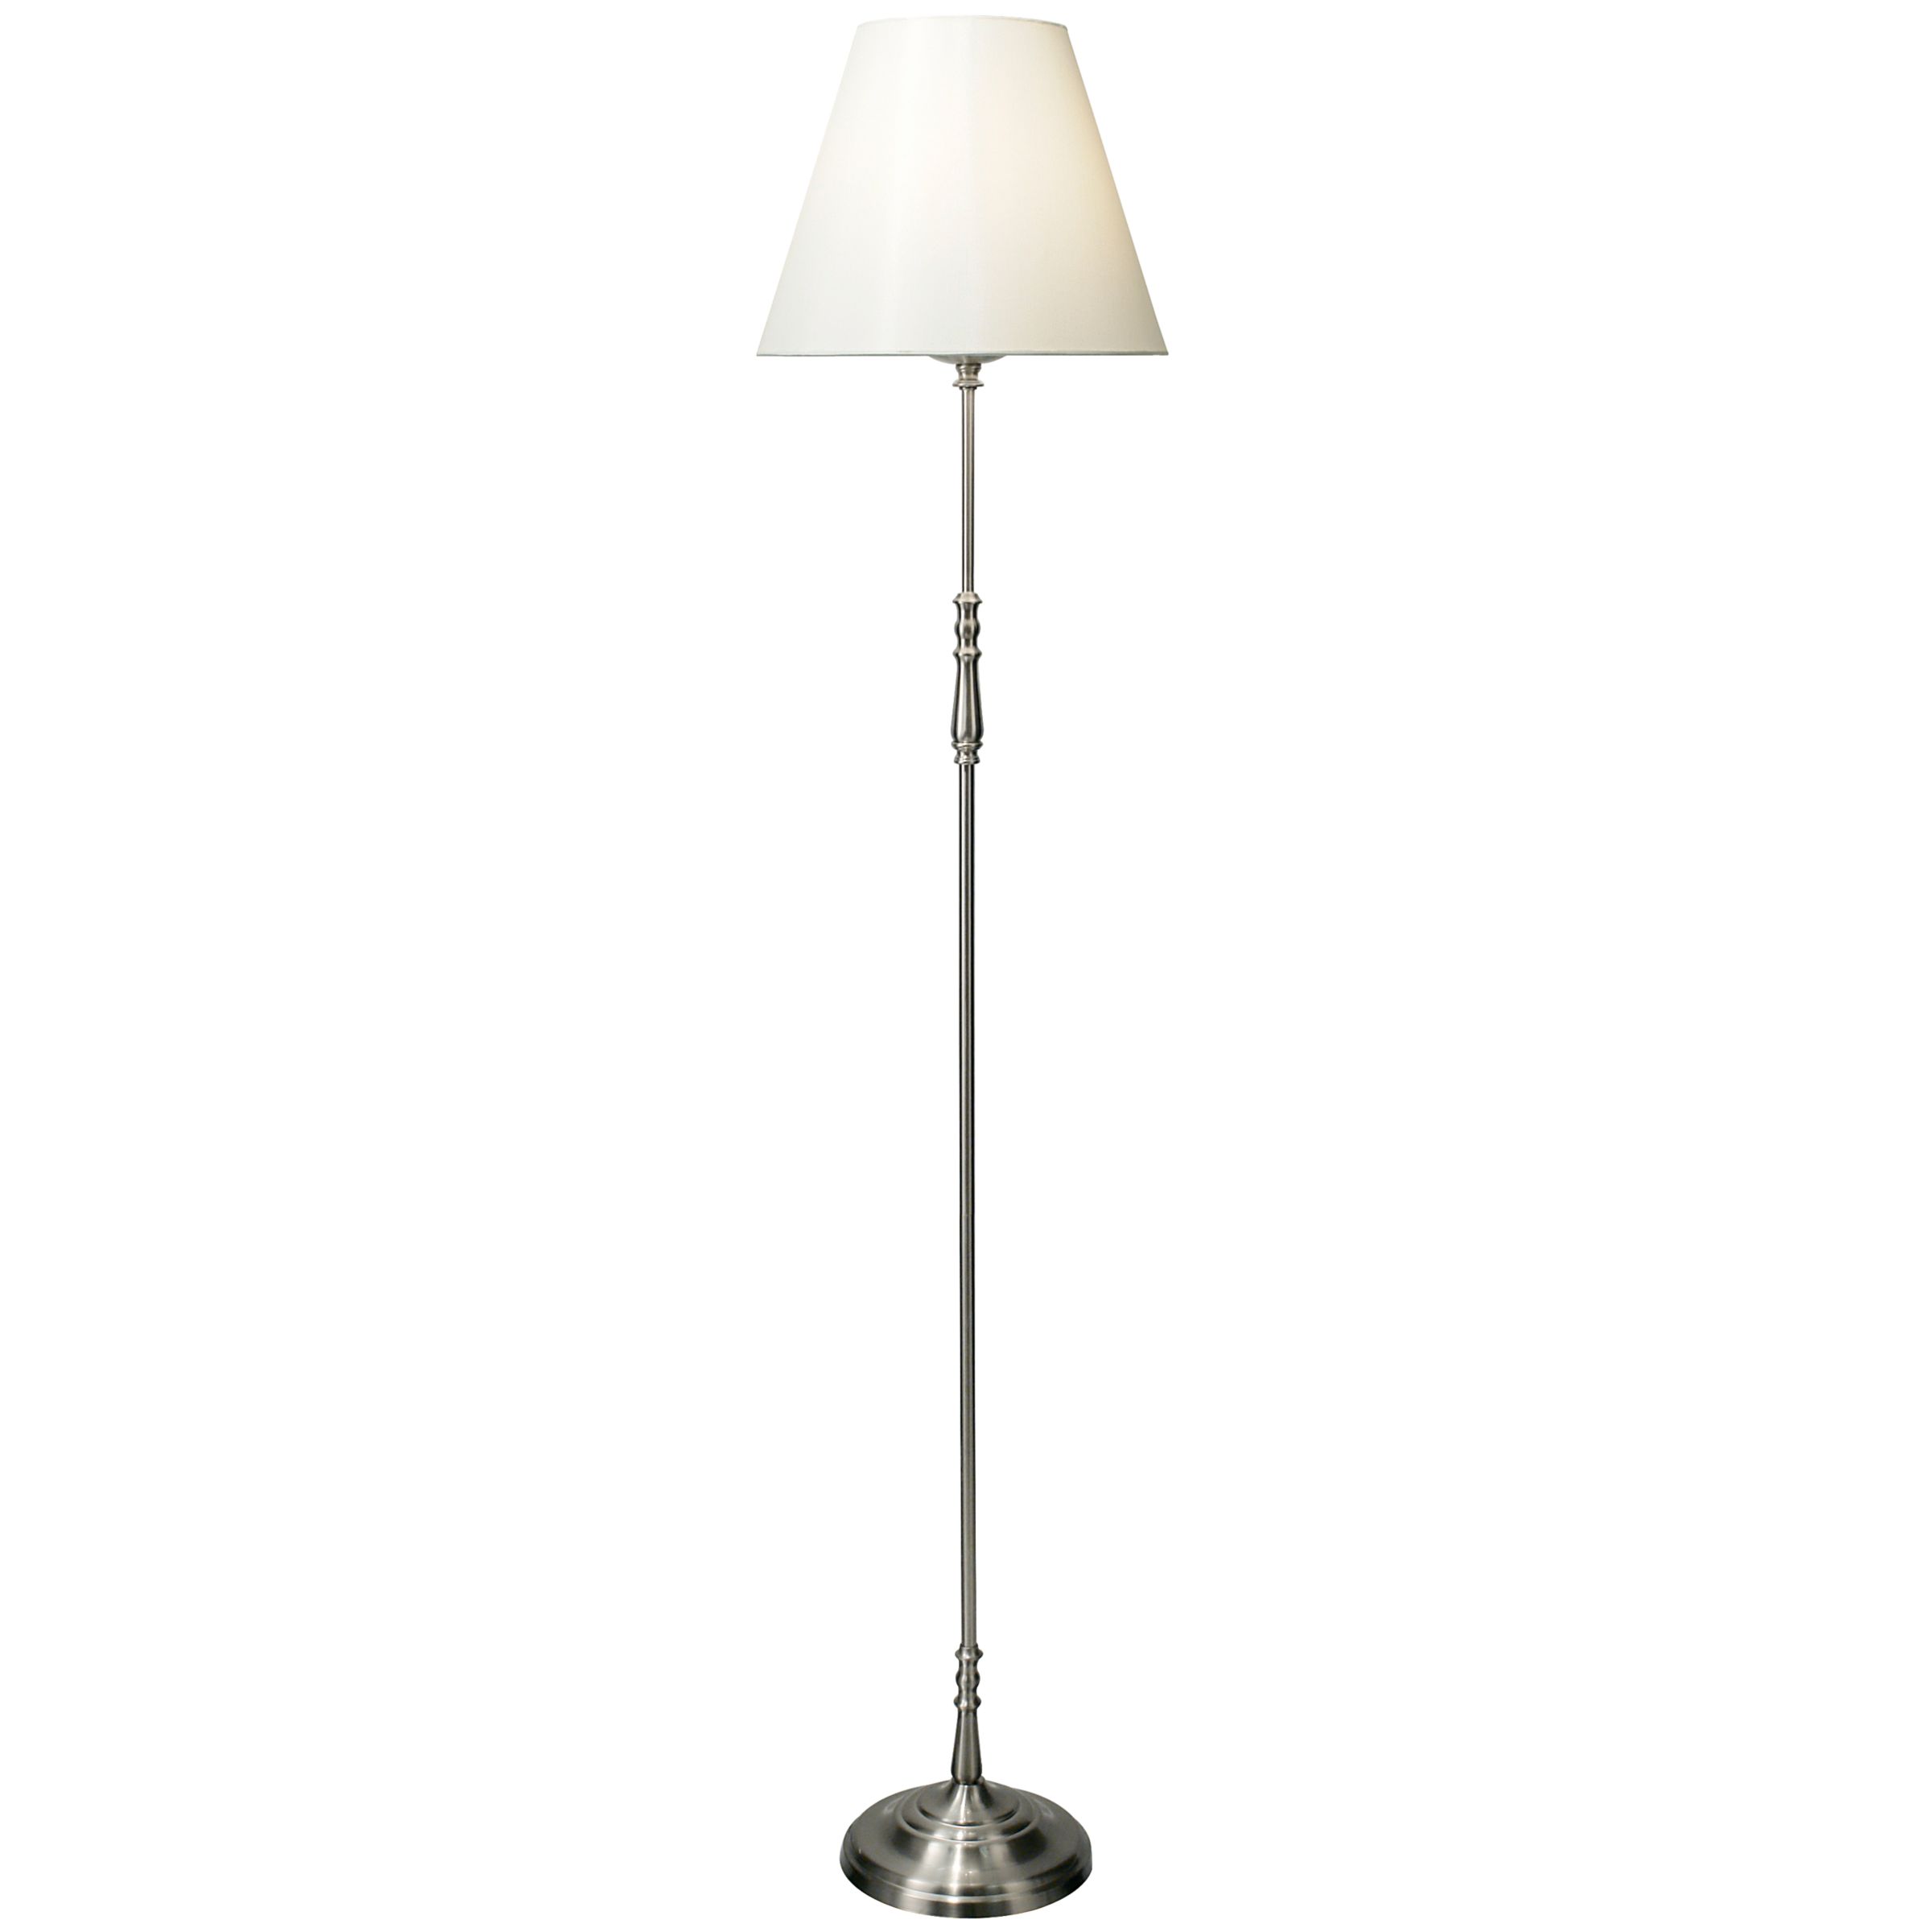 John Lewis Sloane Floor Lamp, Nickel